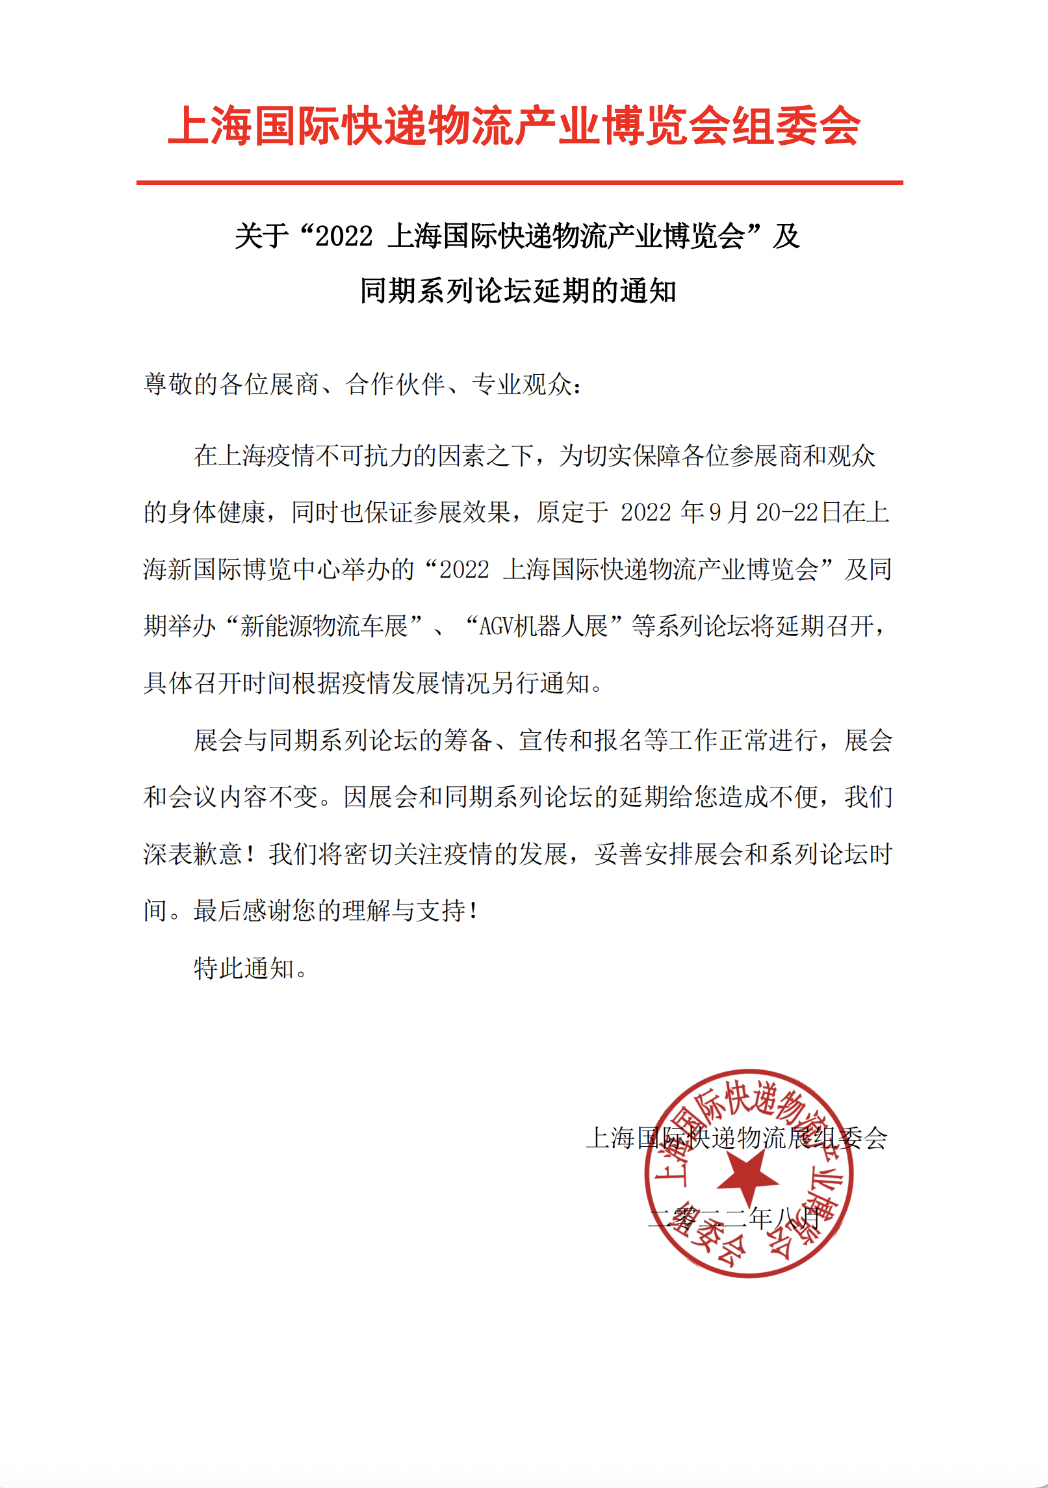 2022上海国际快递物流产业博览会延期通知